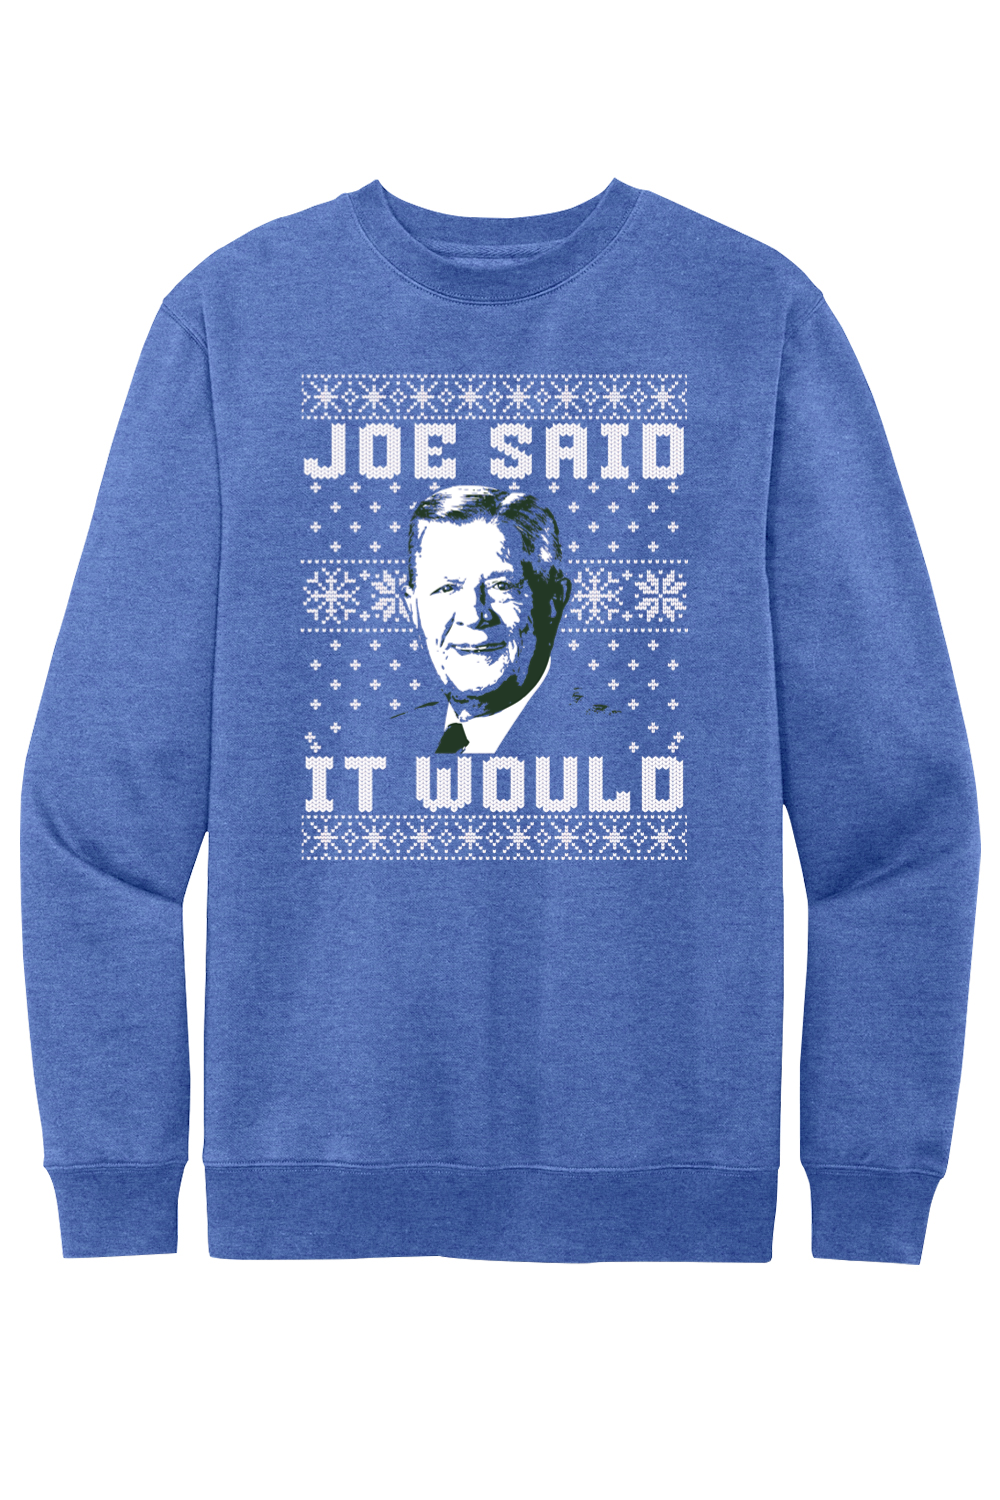 Joe Said it Would - Ugly Christmas Sweate - Fleece Crewneck Sweatshirt - Yinzylvania